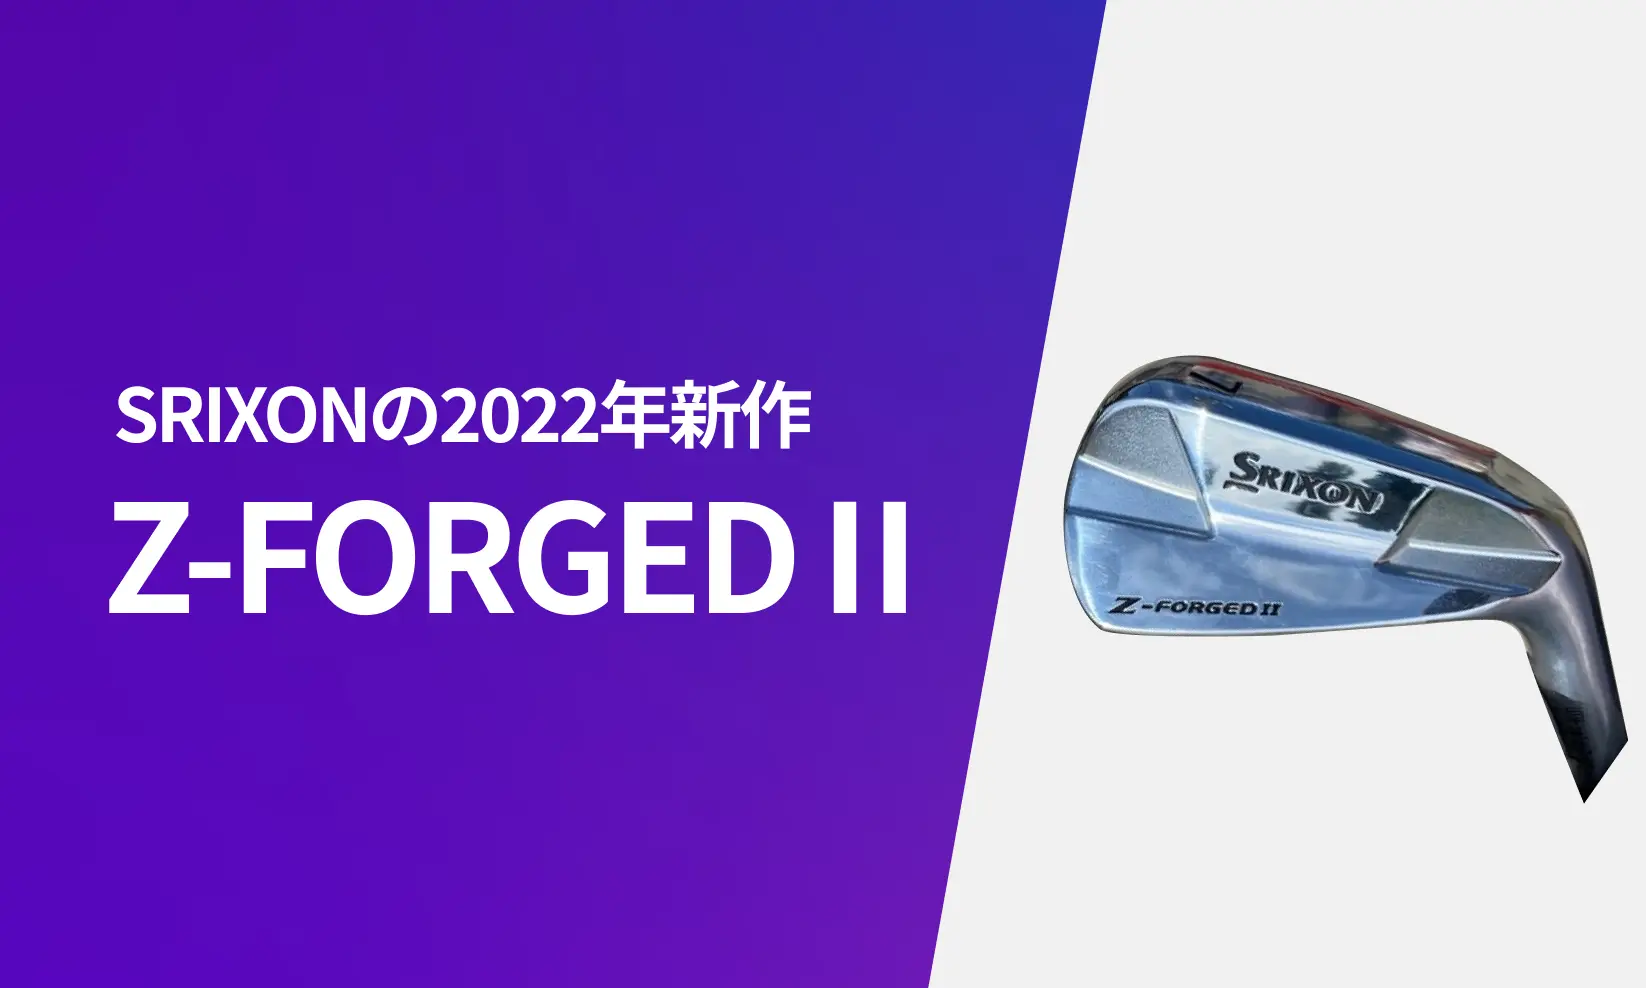 スリクソン 新作 Z-FORGED Ⅱ アイアンの2022年新情報【リーク画像あり】